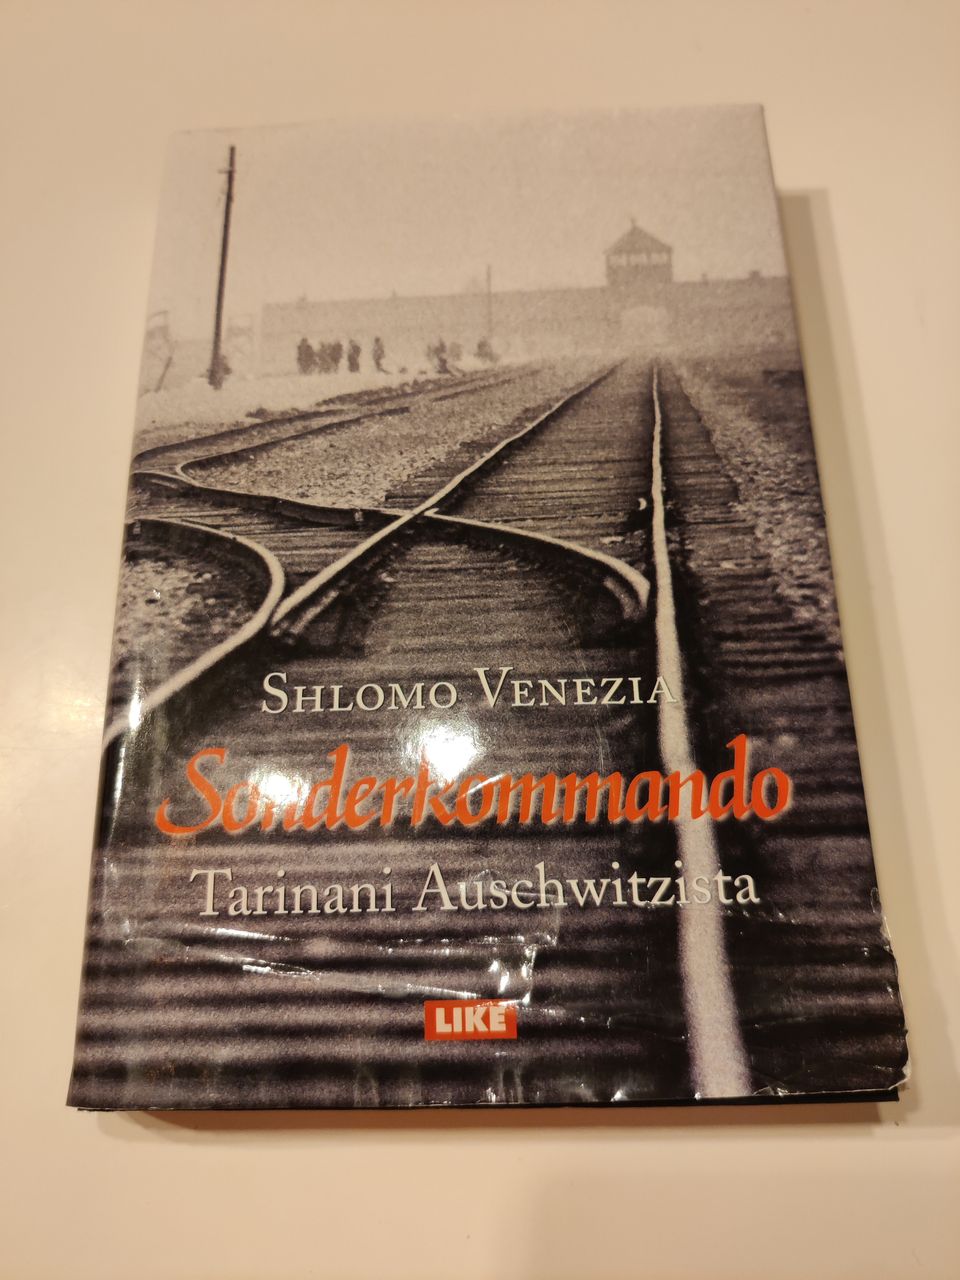 Sonderkommando tarinani Auschwitzista